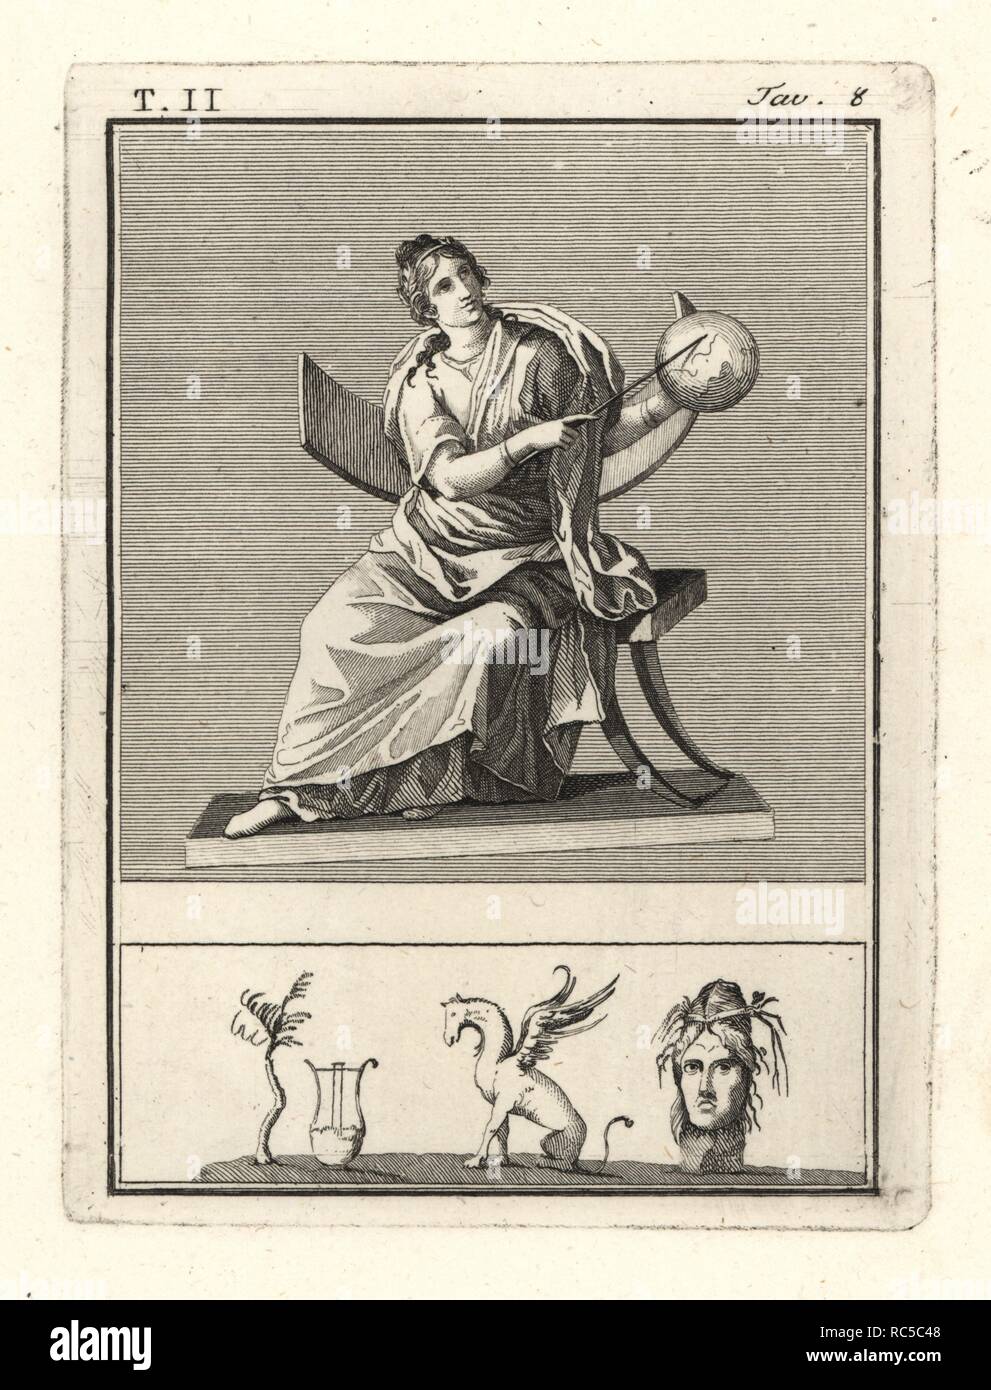 Urania, Muse der Astronomie, mit Himmelsglobus und Personal. Kupferstich von Tommaso Piroli von seinem antiken Herculaneum (Antichita di Ercolano), Rom, 1789. Stockfoto